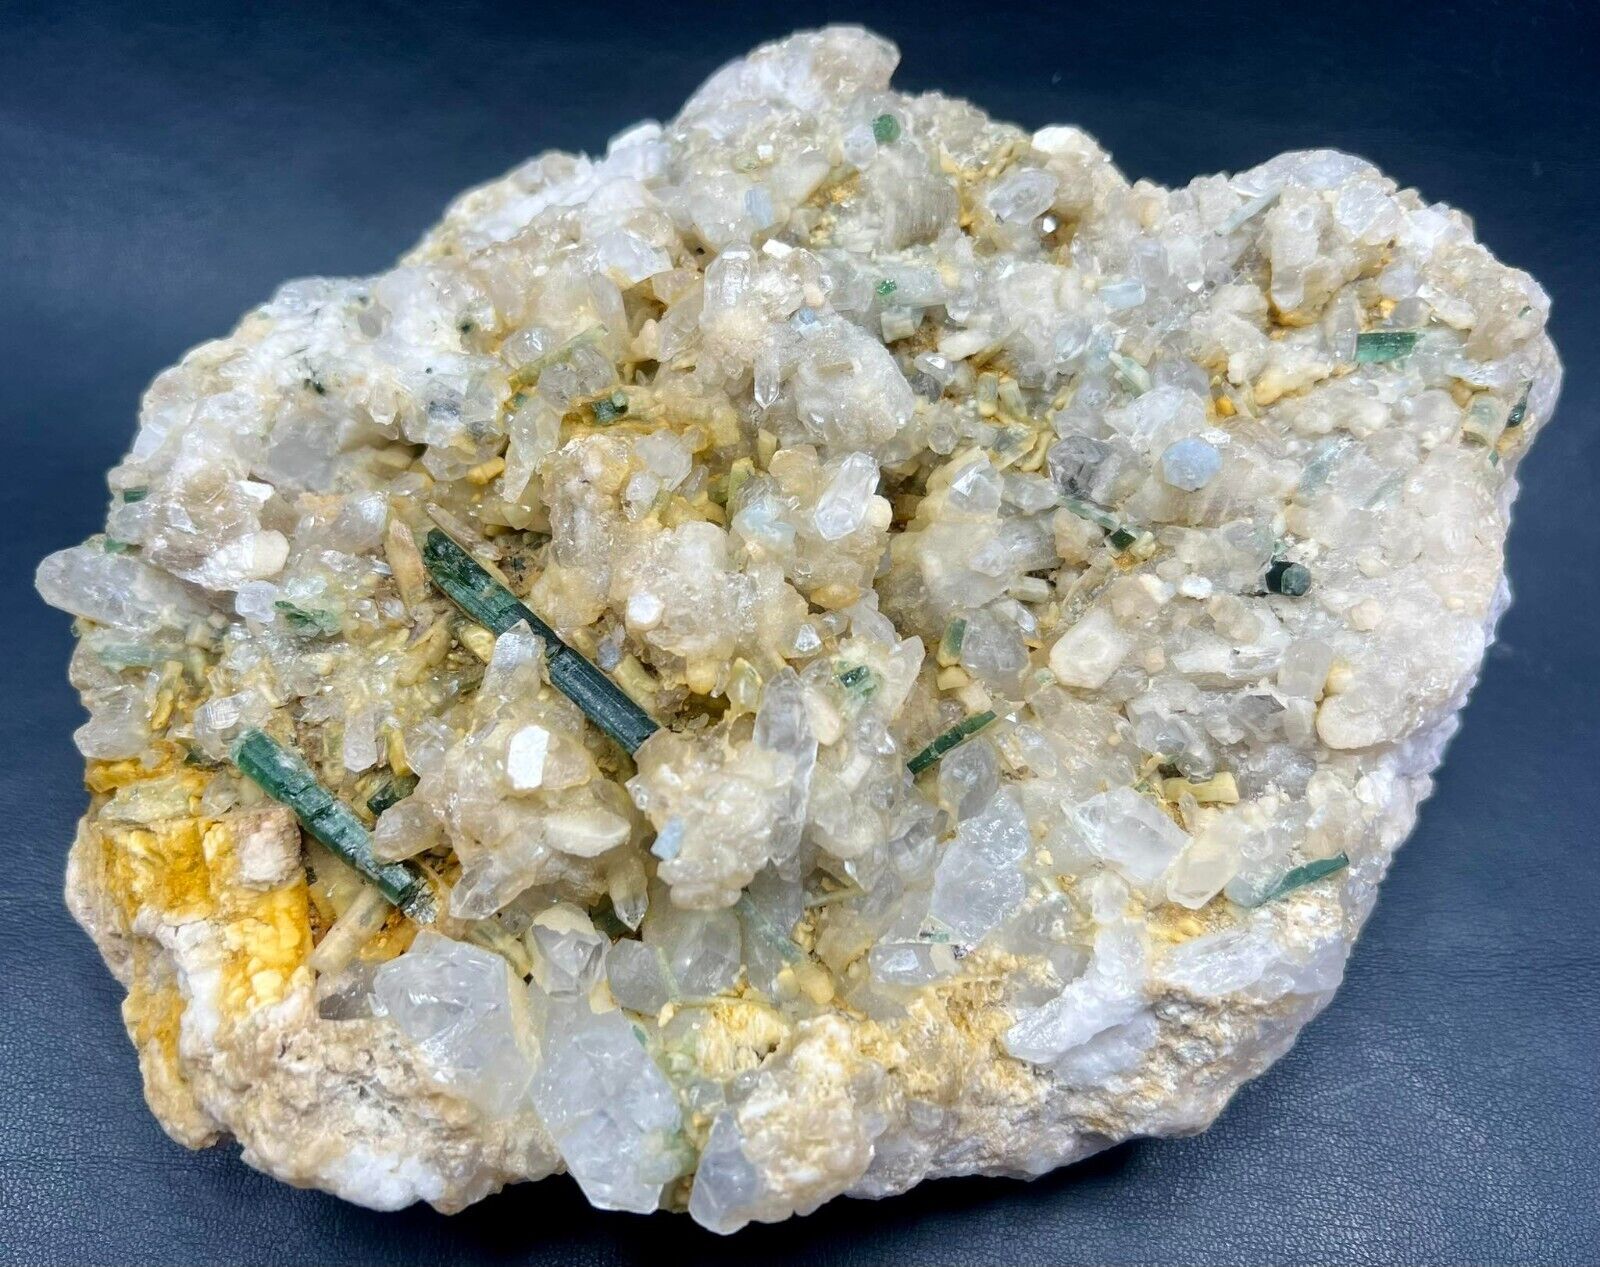 1752 Gr. Green Tourmaline, Apatite, Aquamarine, Mica, Quartz, Albite Crystals On